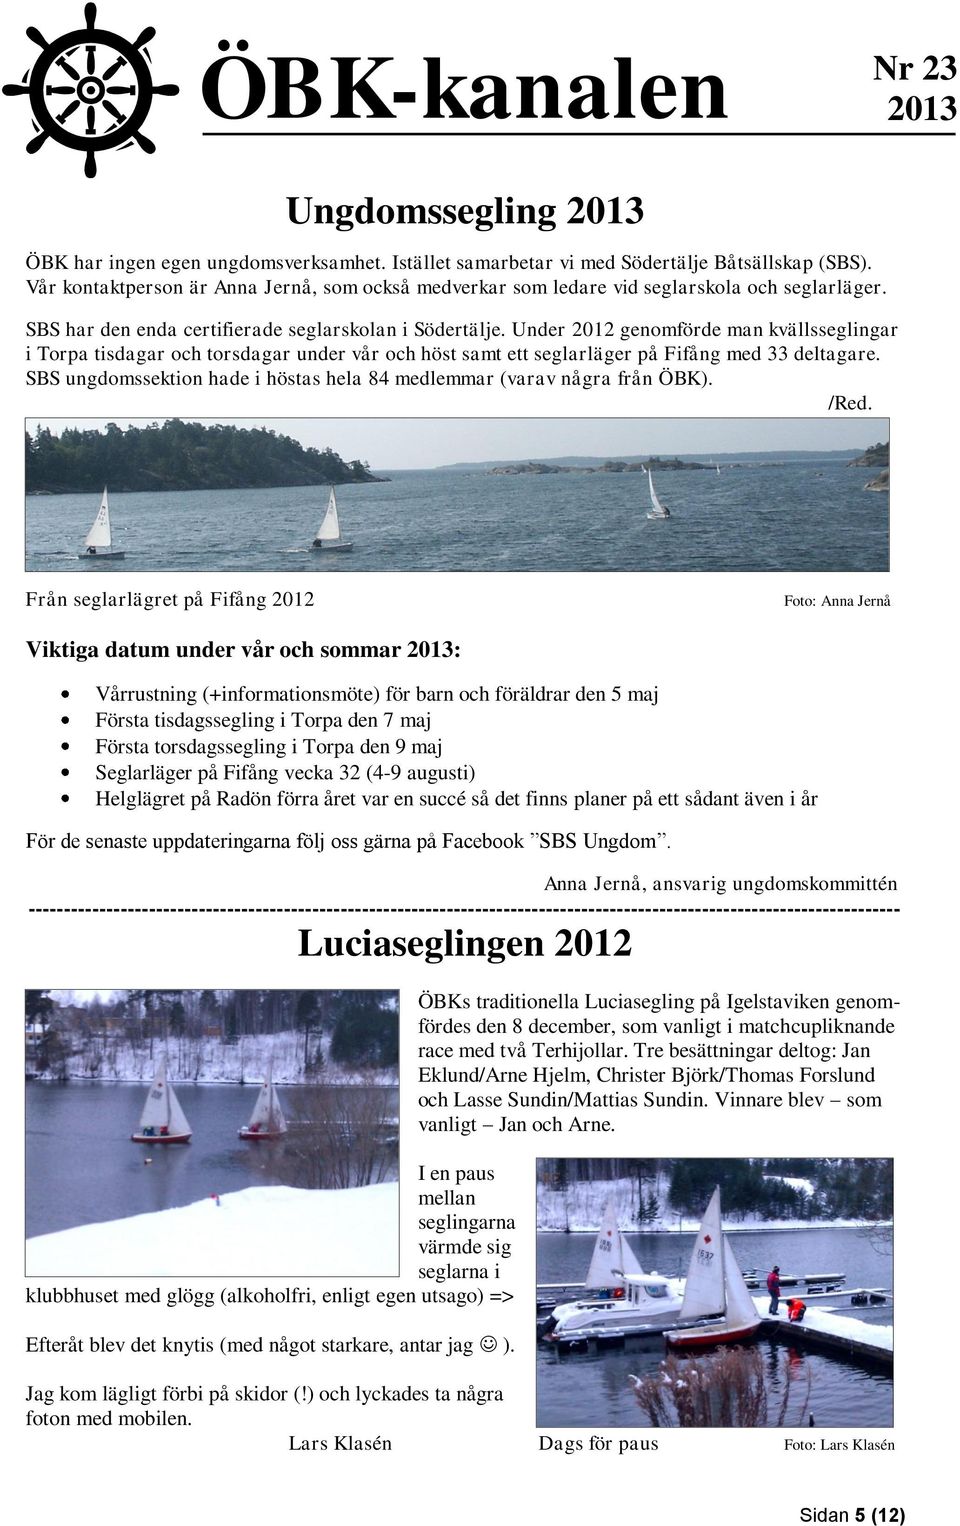 Under 2012 genomförde man kvällsseglingar i Torpa tisdagar och torsdagar under vår och höst samt ett seglarläger på Fifång med 33 deltagare.